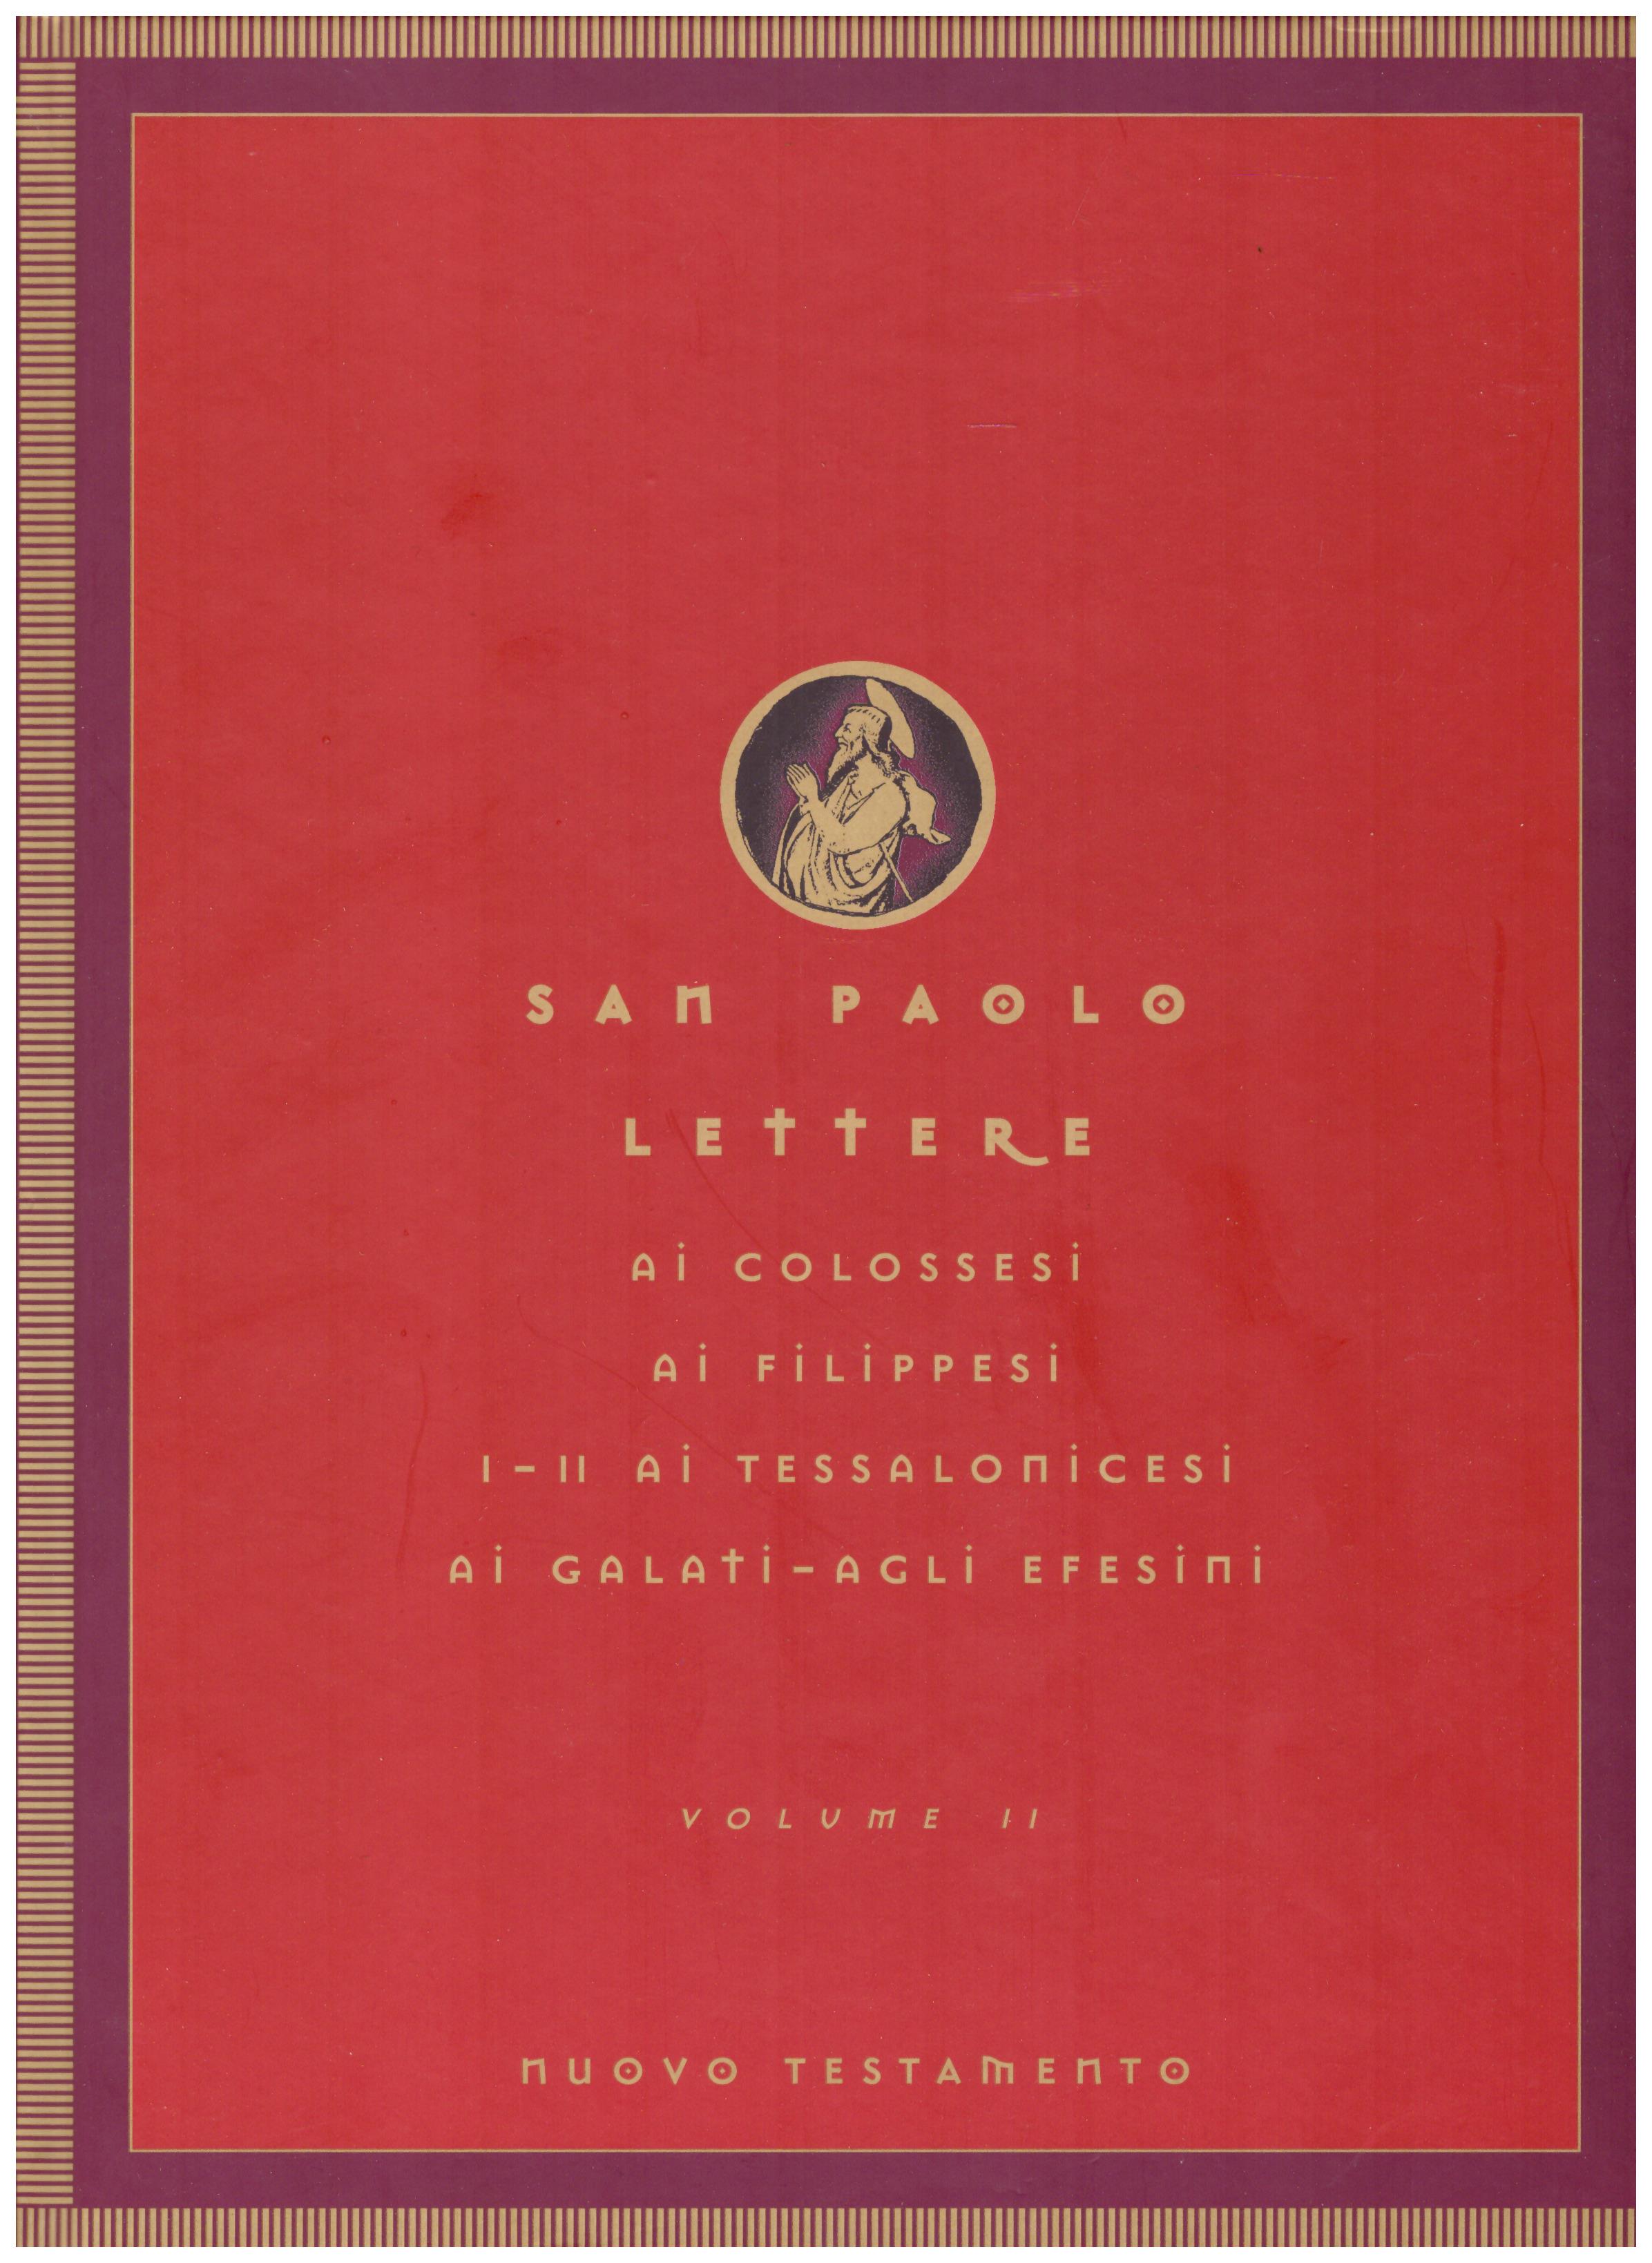 Titolo: Nuovo Testamento, San Paolo lettere volume 2 Autore : AA.VV.  Editore: Famiglia cristiana 2003